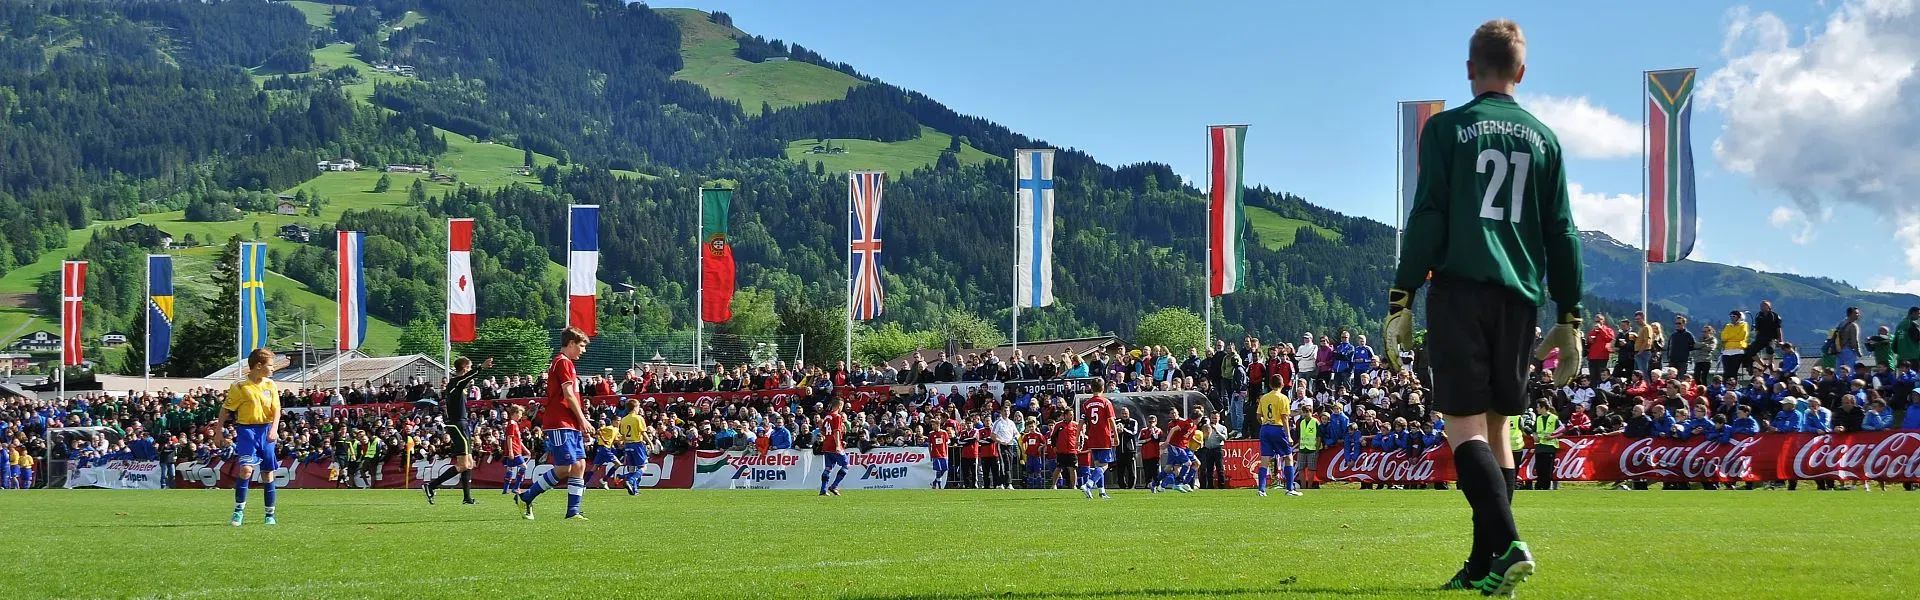 Cordial Cup Kitzbüheler Horn - Region St. Johann in Tirol